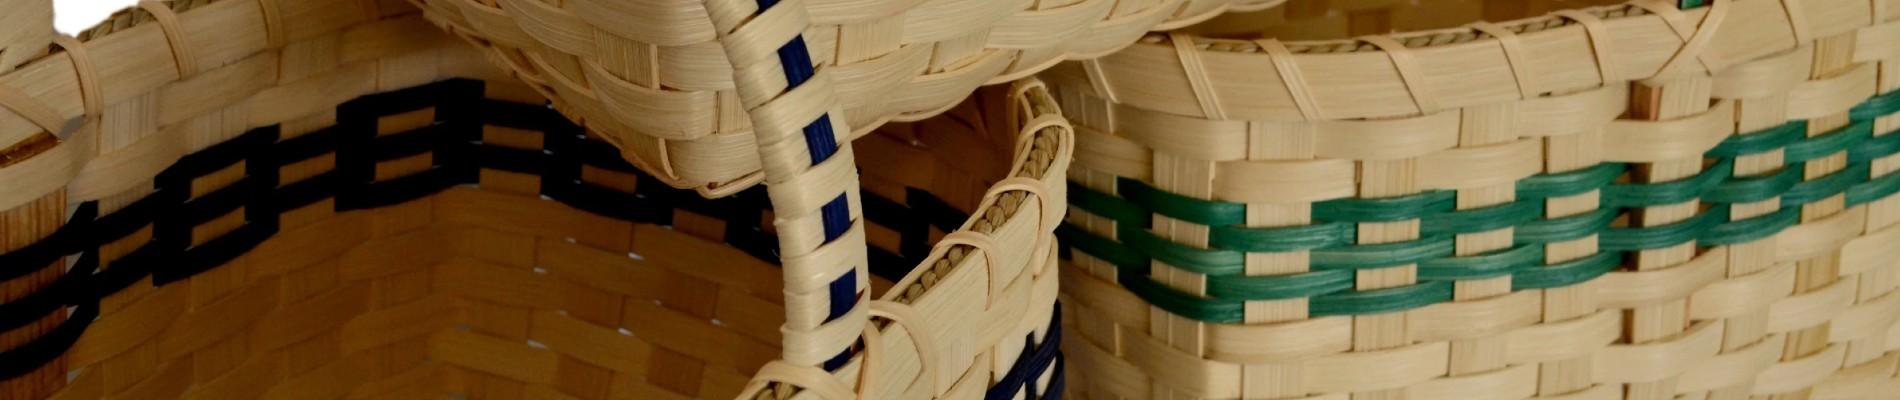 New! Basket Weaving - Roll Basket